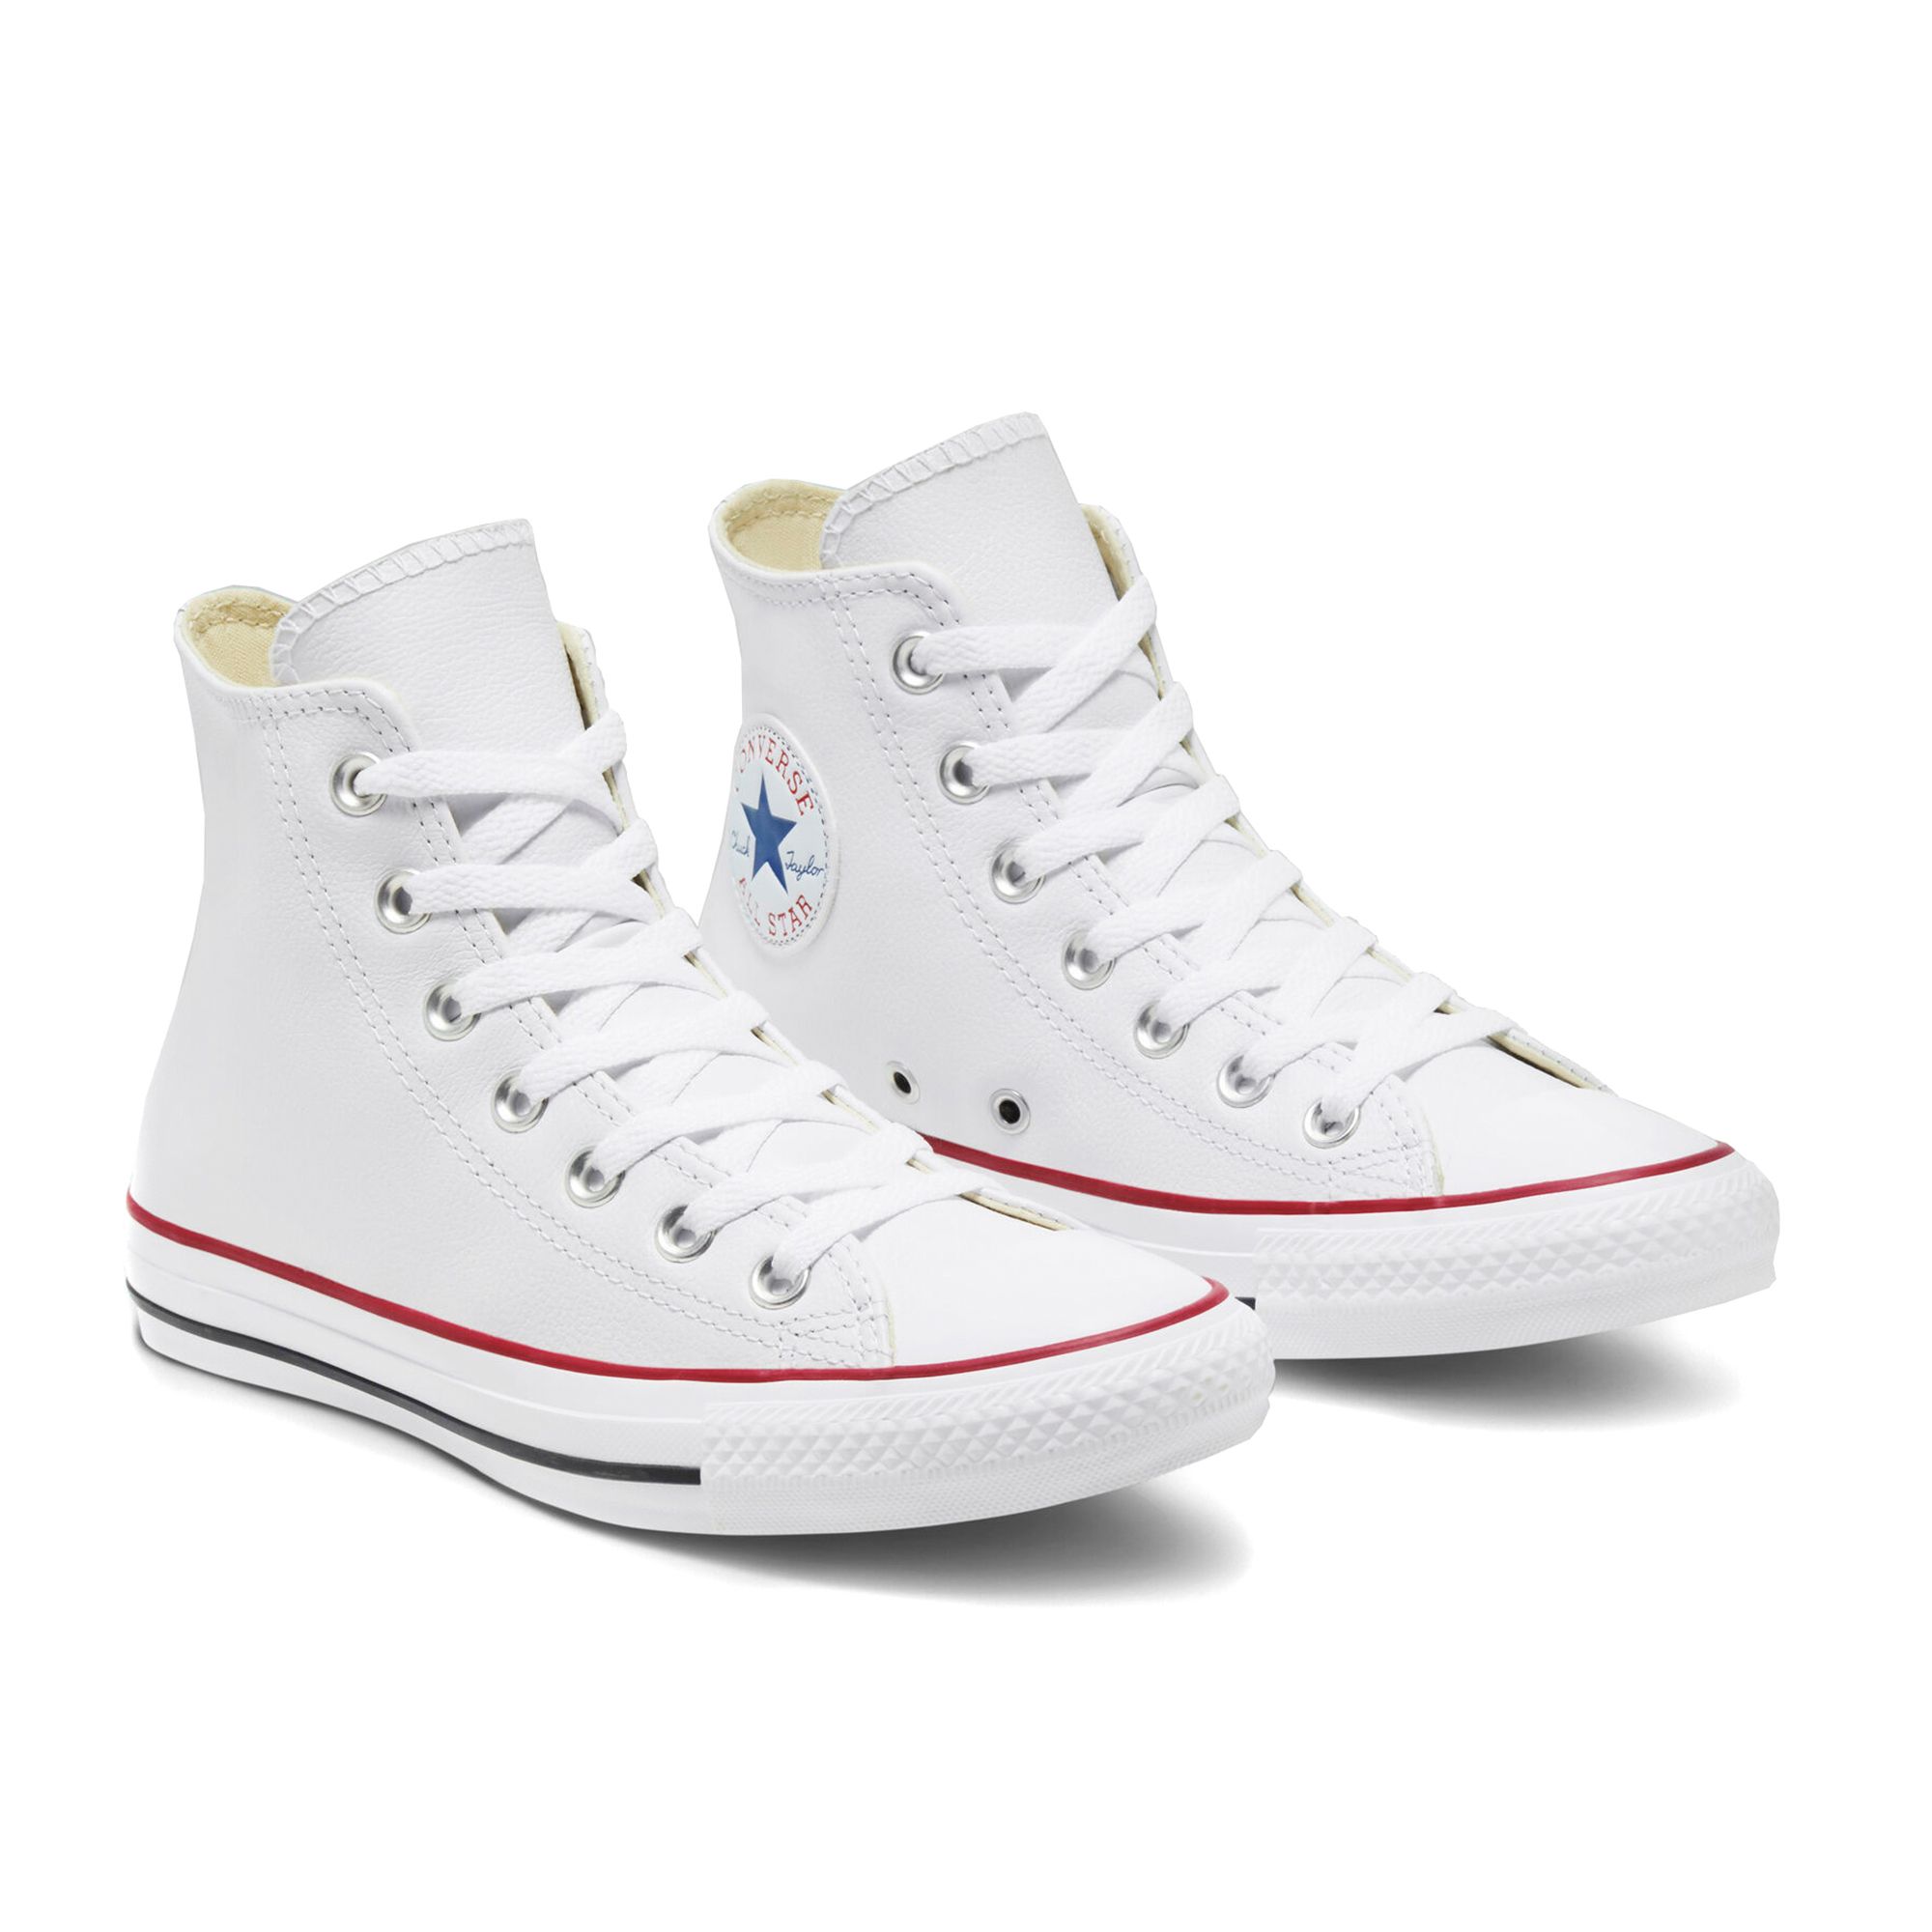 Купить Кеды Converse кожаные высокие белые дешево в СПб | KEDS SHOP